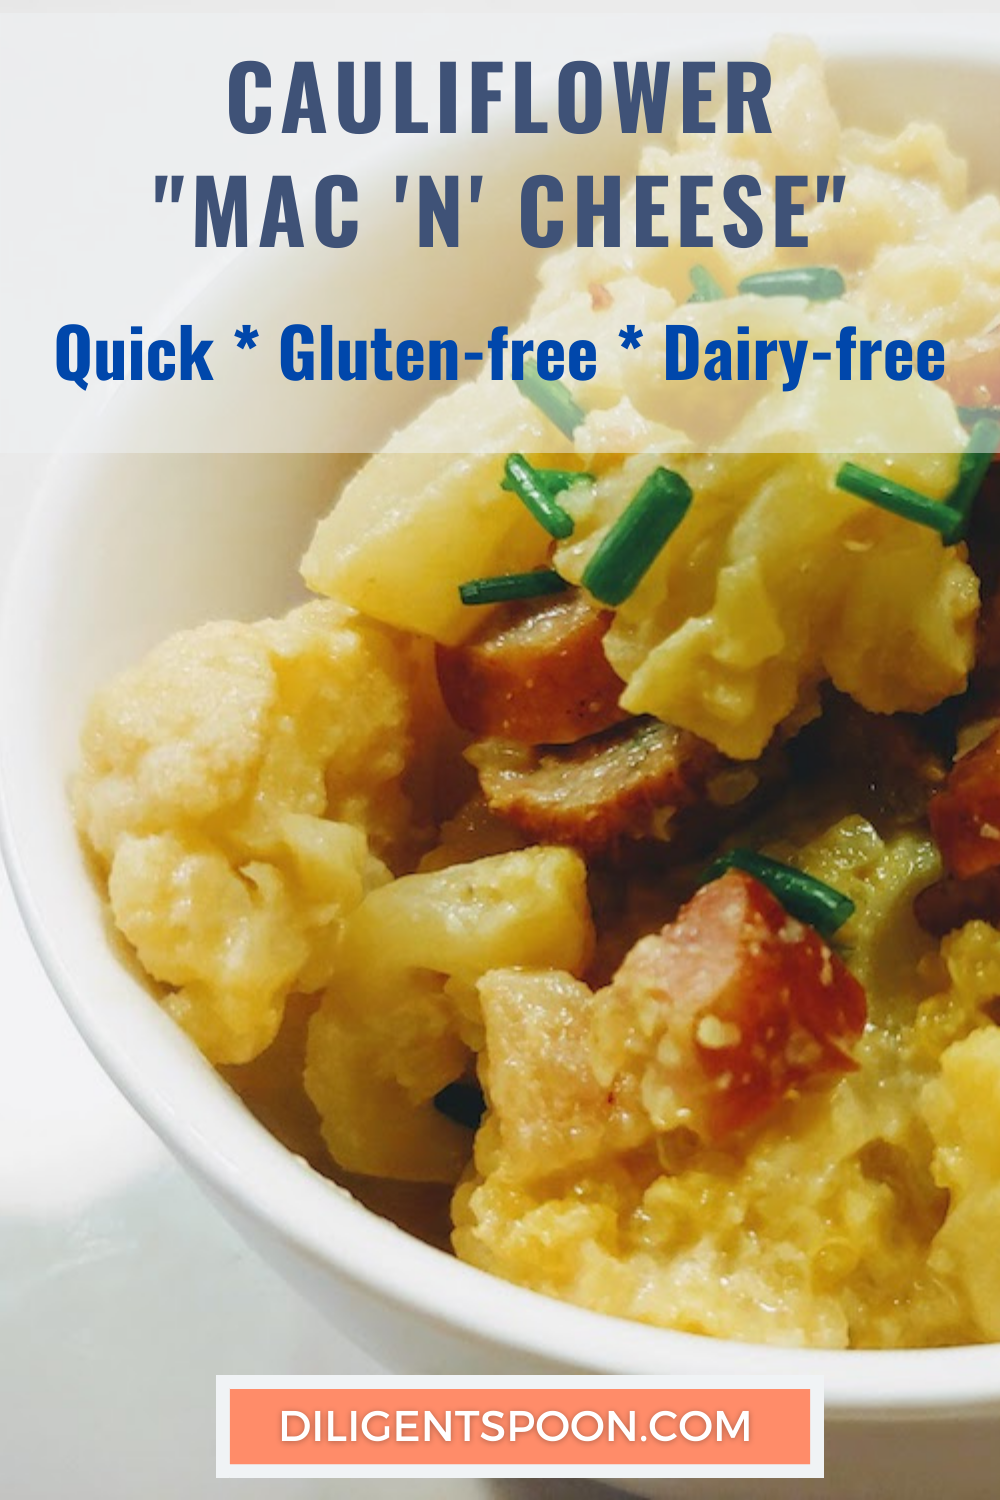 How to Make Quick Gluten-Free Dairy-free Cauliflower "Mac and Cheese"